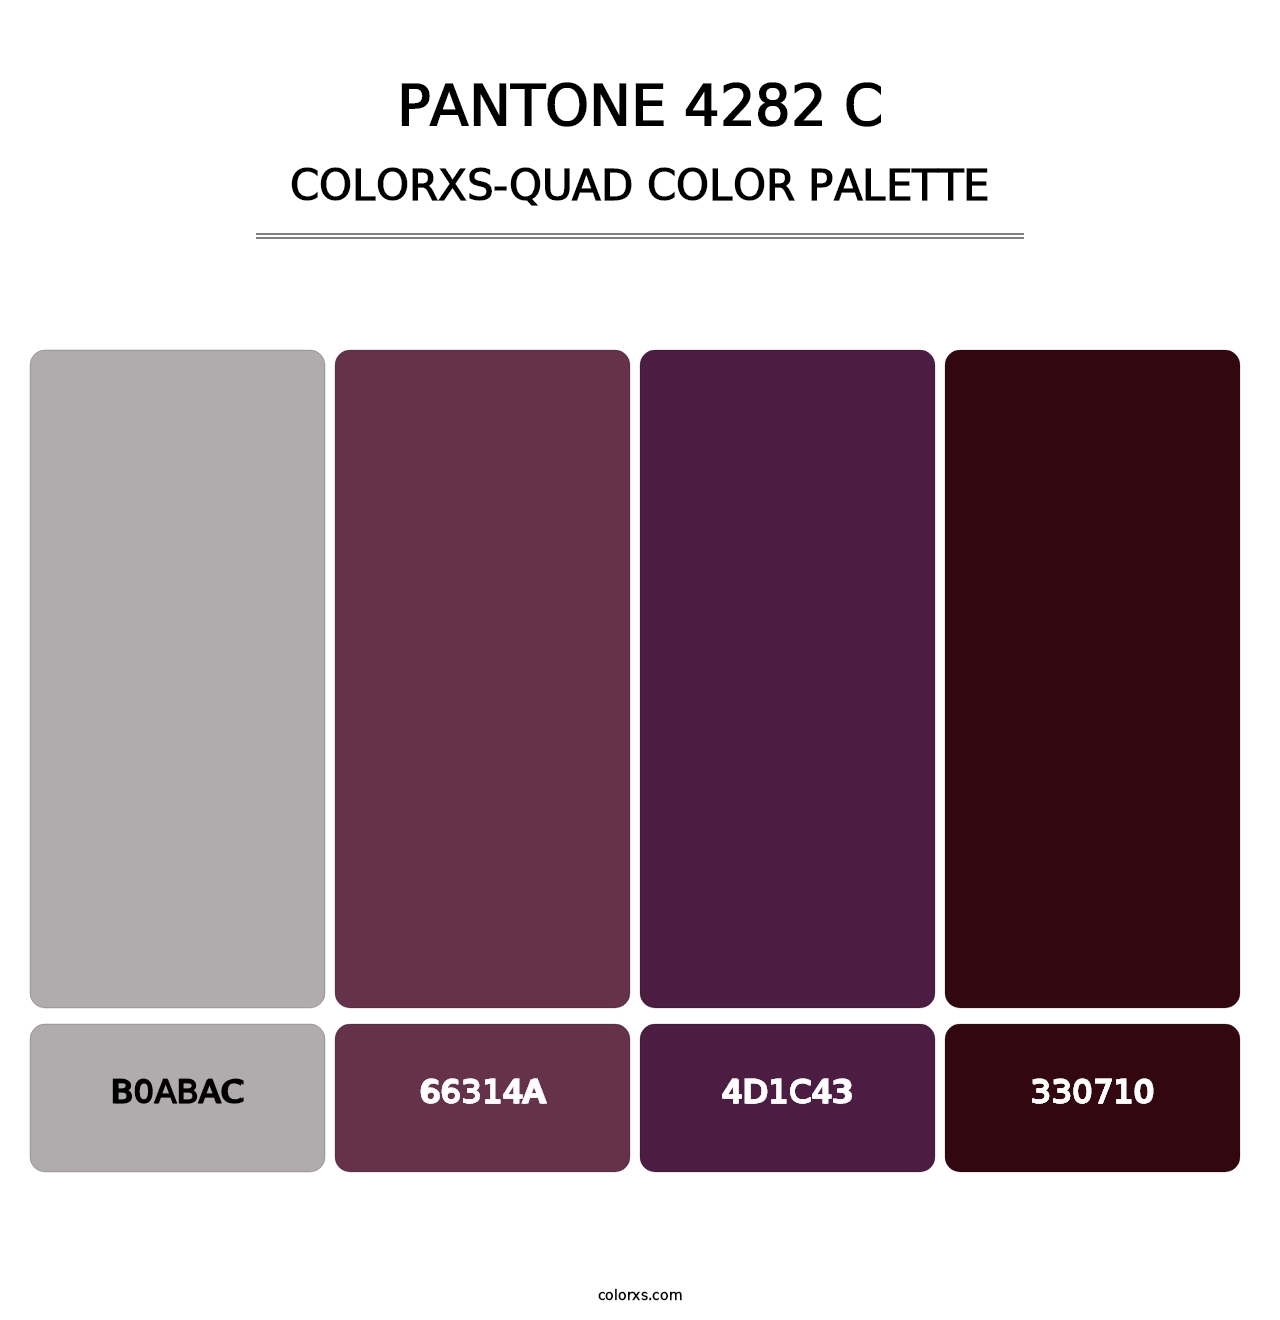 PANTONE 4282 C - Colorxs Quad Palette